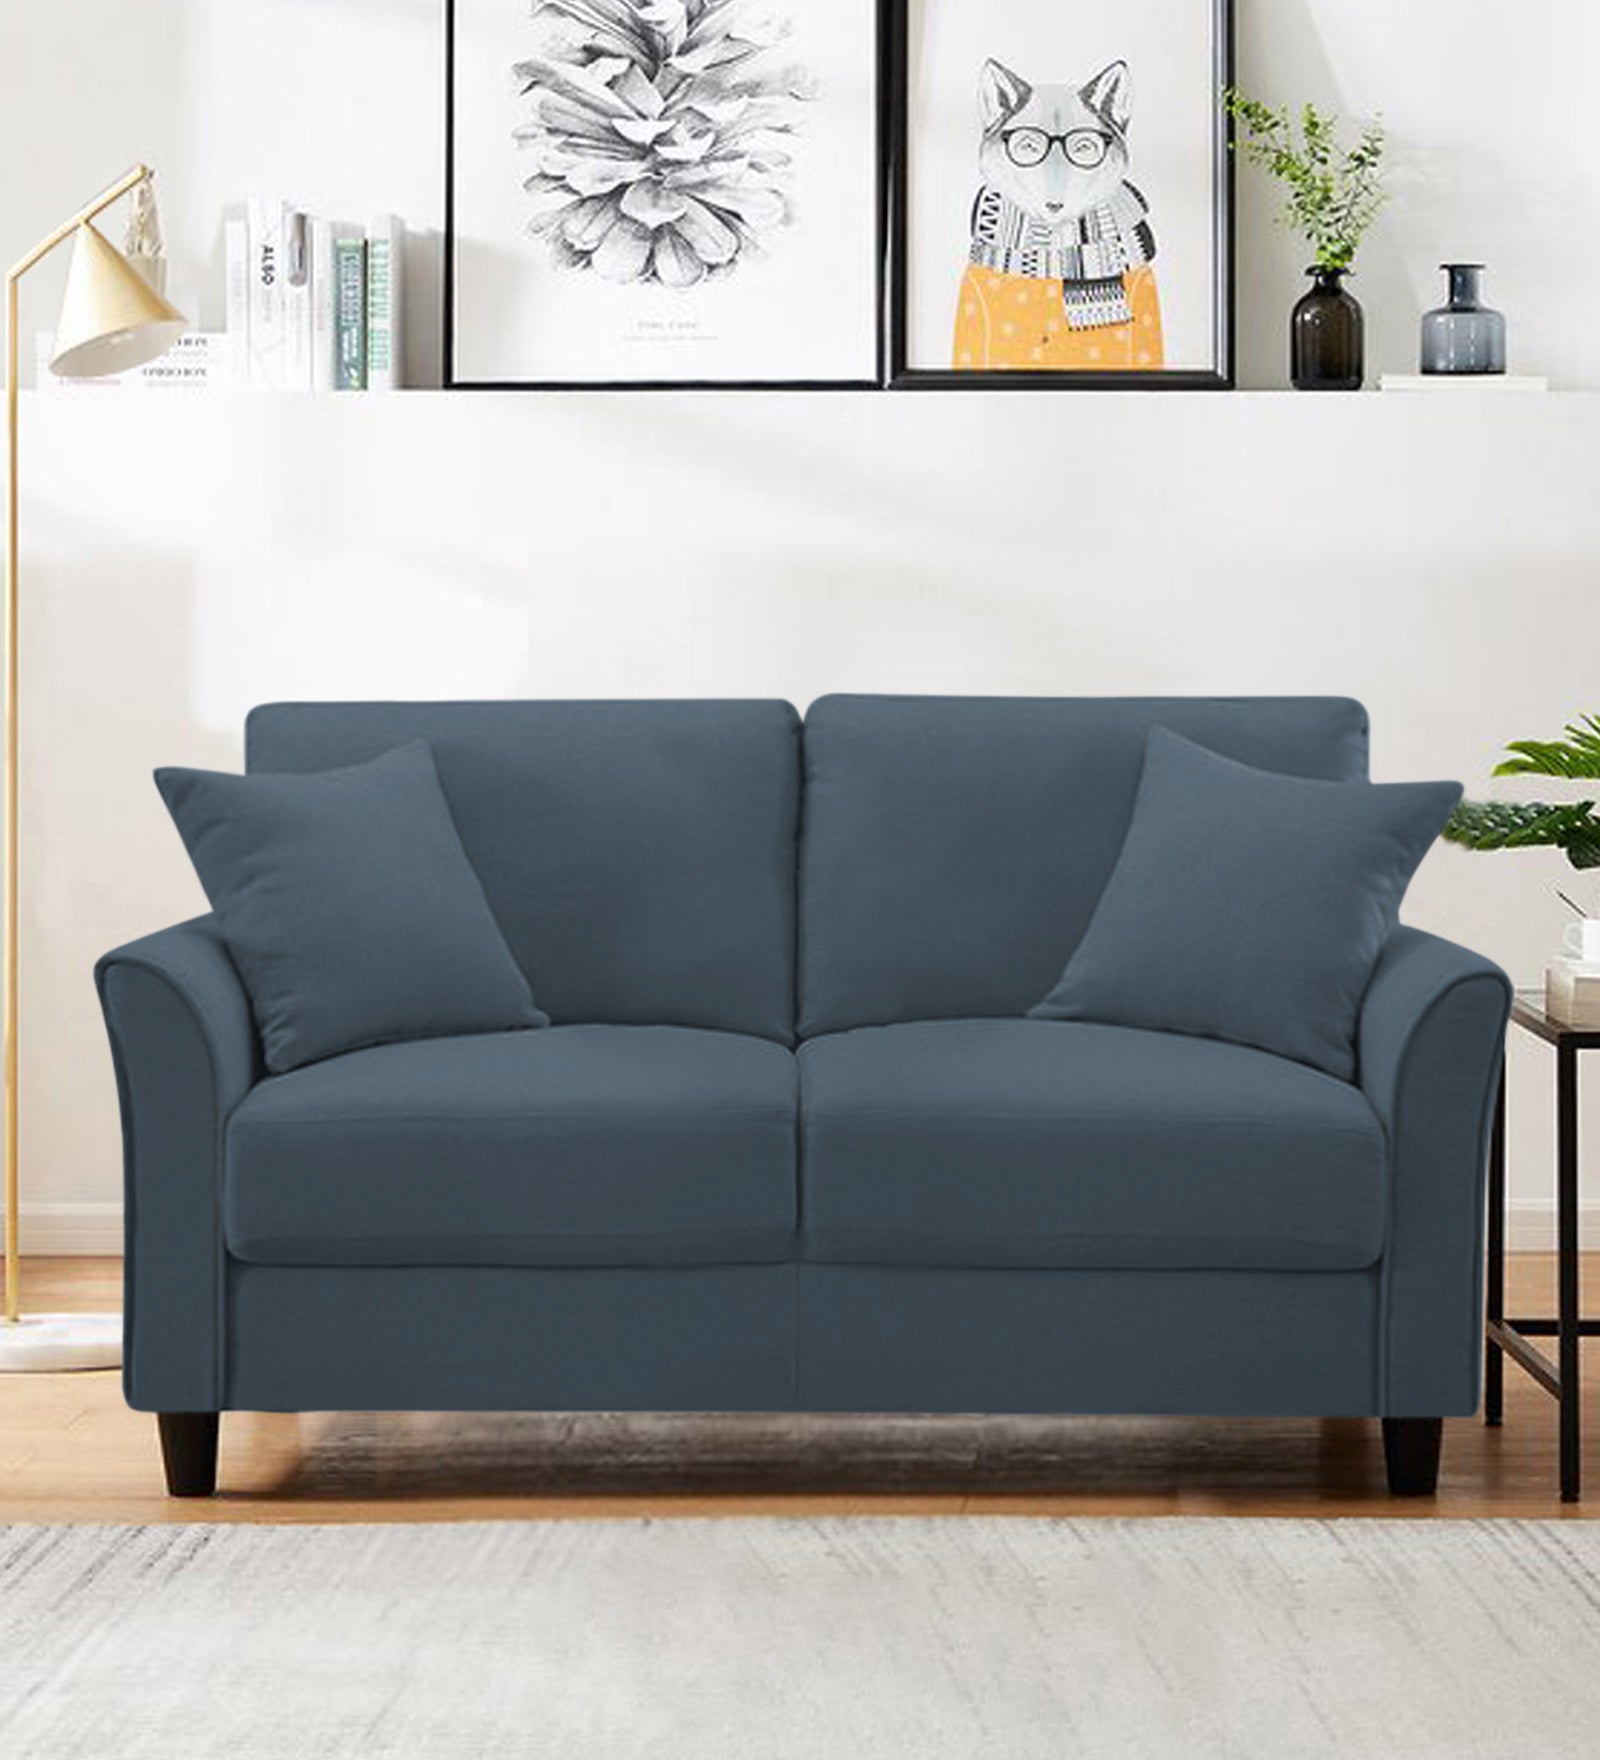 Daroo Velvet 2 Seater Sofa In Oxford Blue Colour